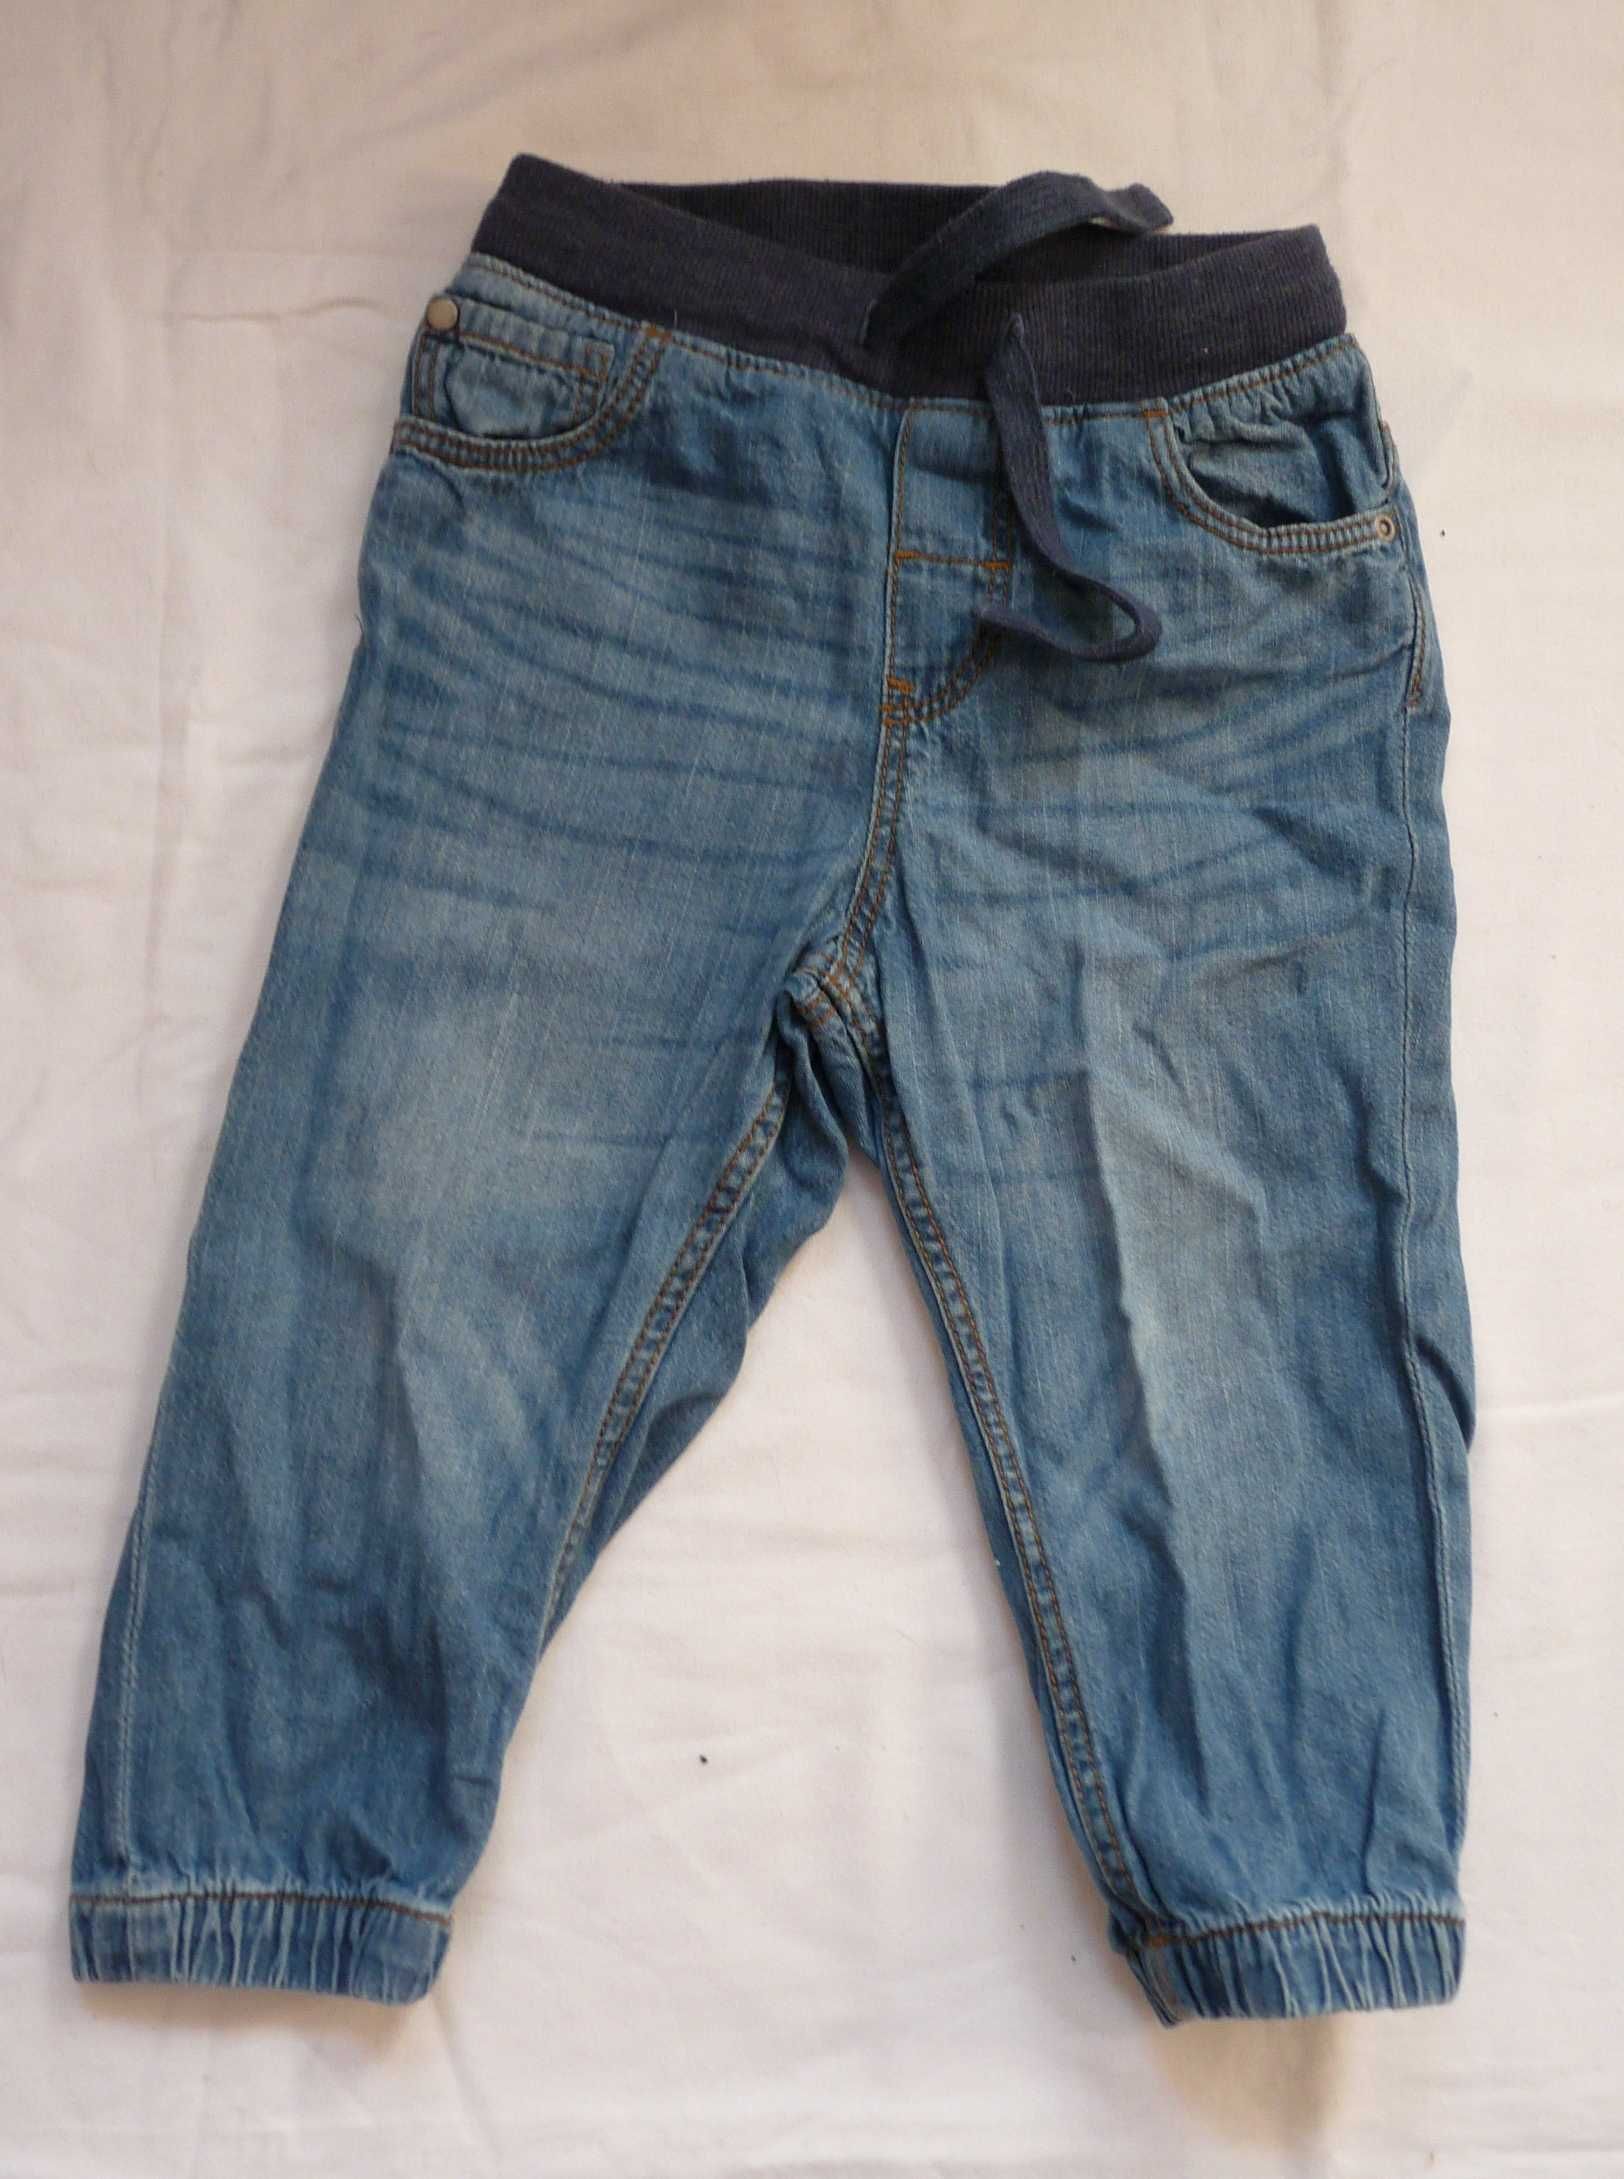 spodnie dla chłopca 92 cm 1.5-2 lata